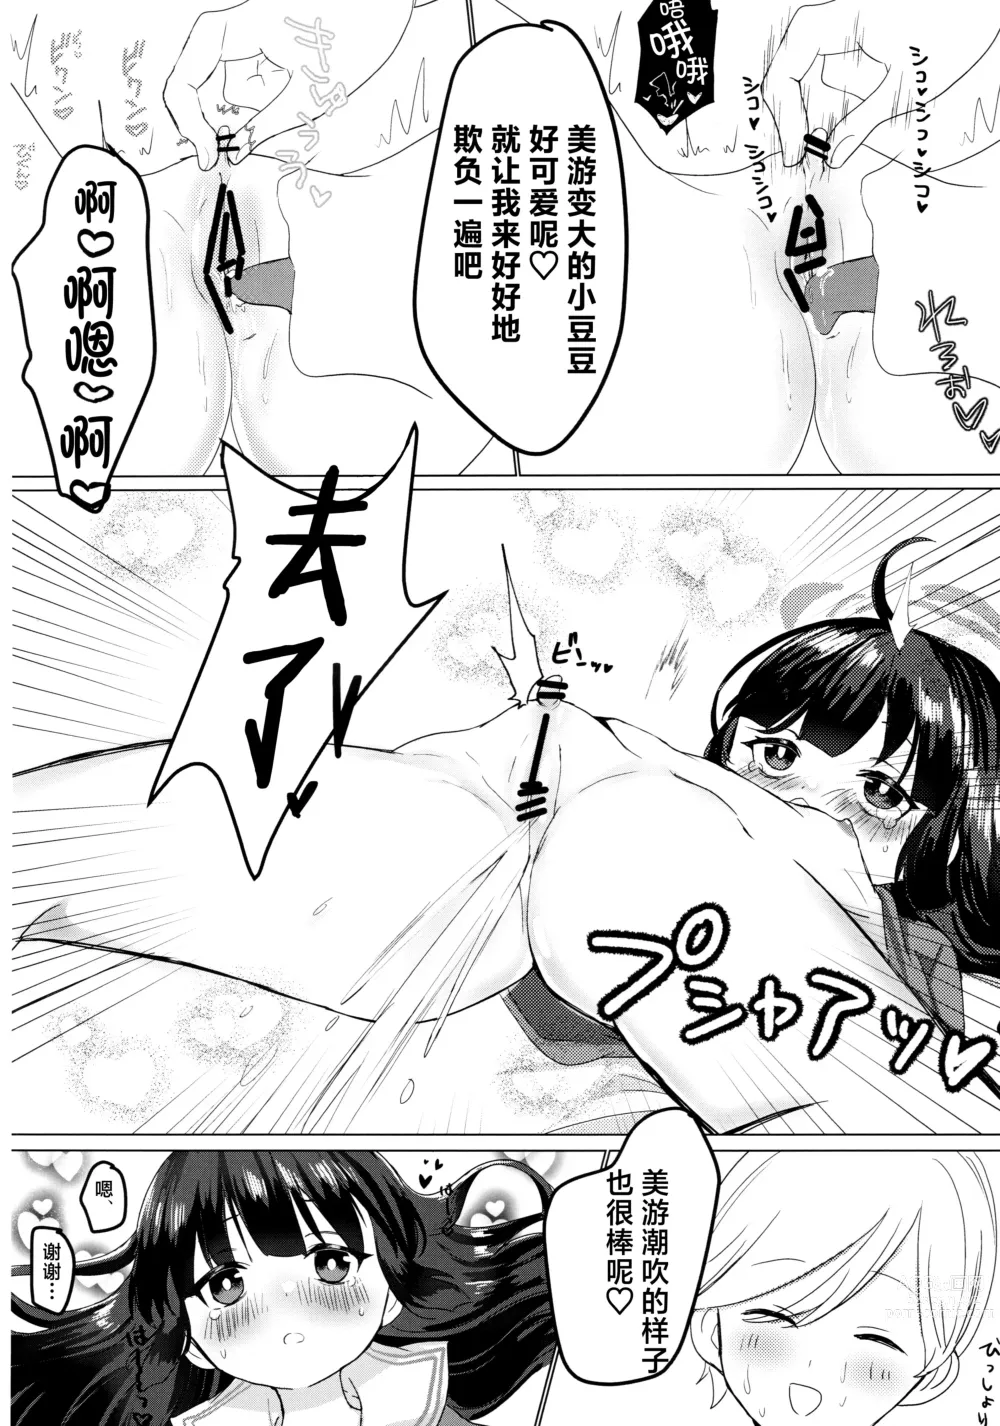 Page 13 of doujinshi Kasumizawa Miyu o Amayakashitai!